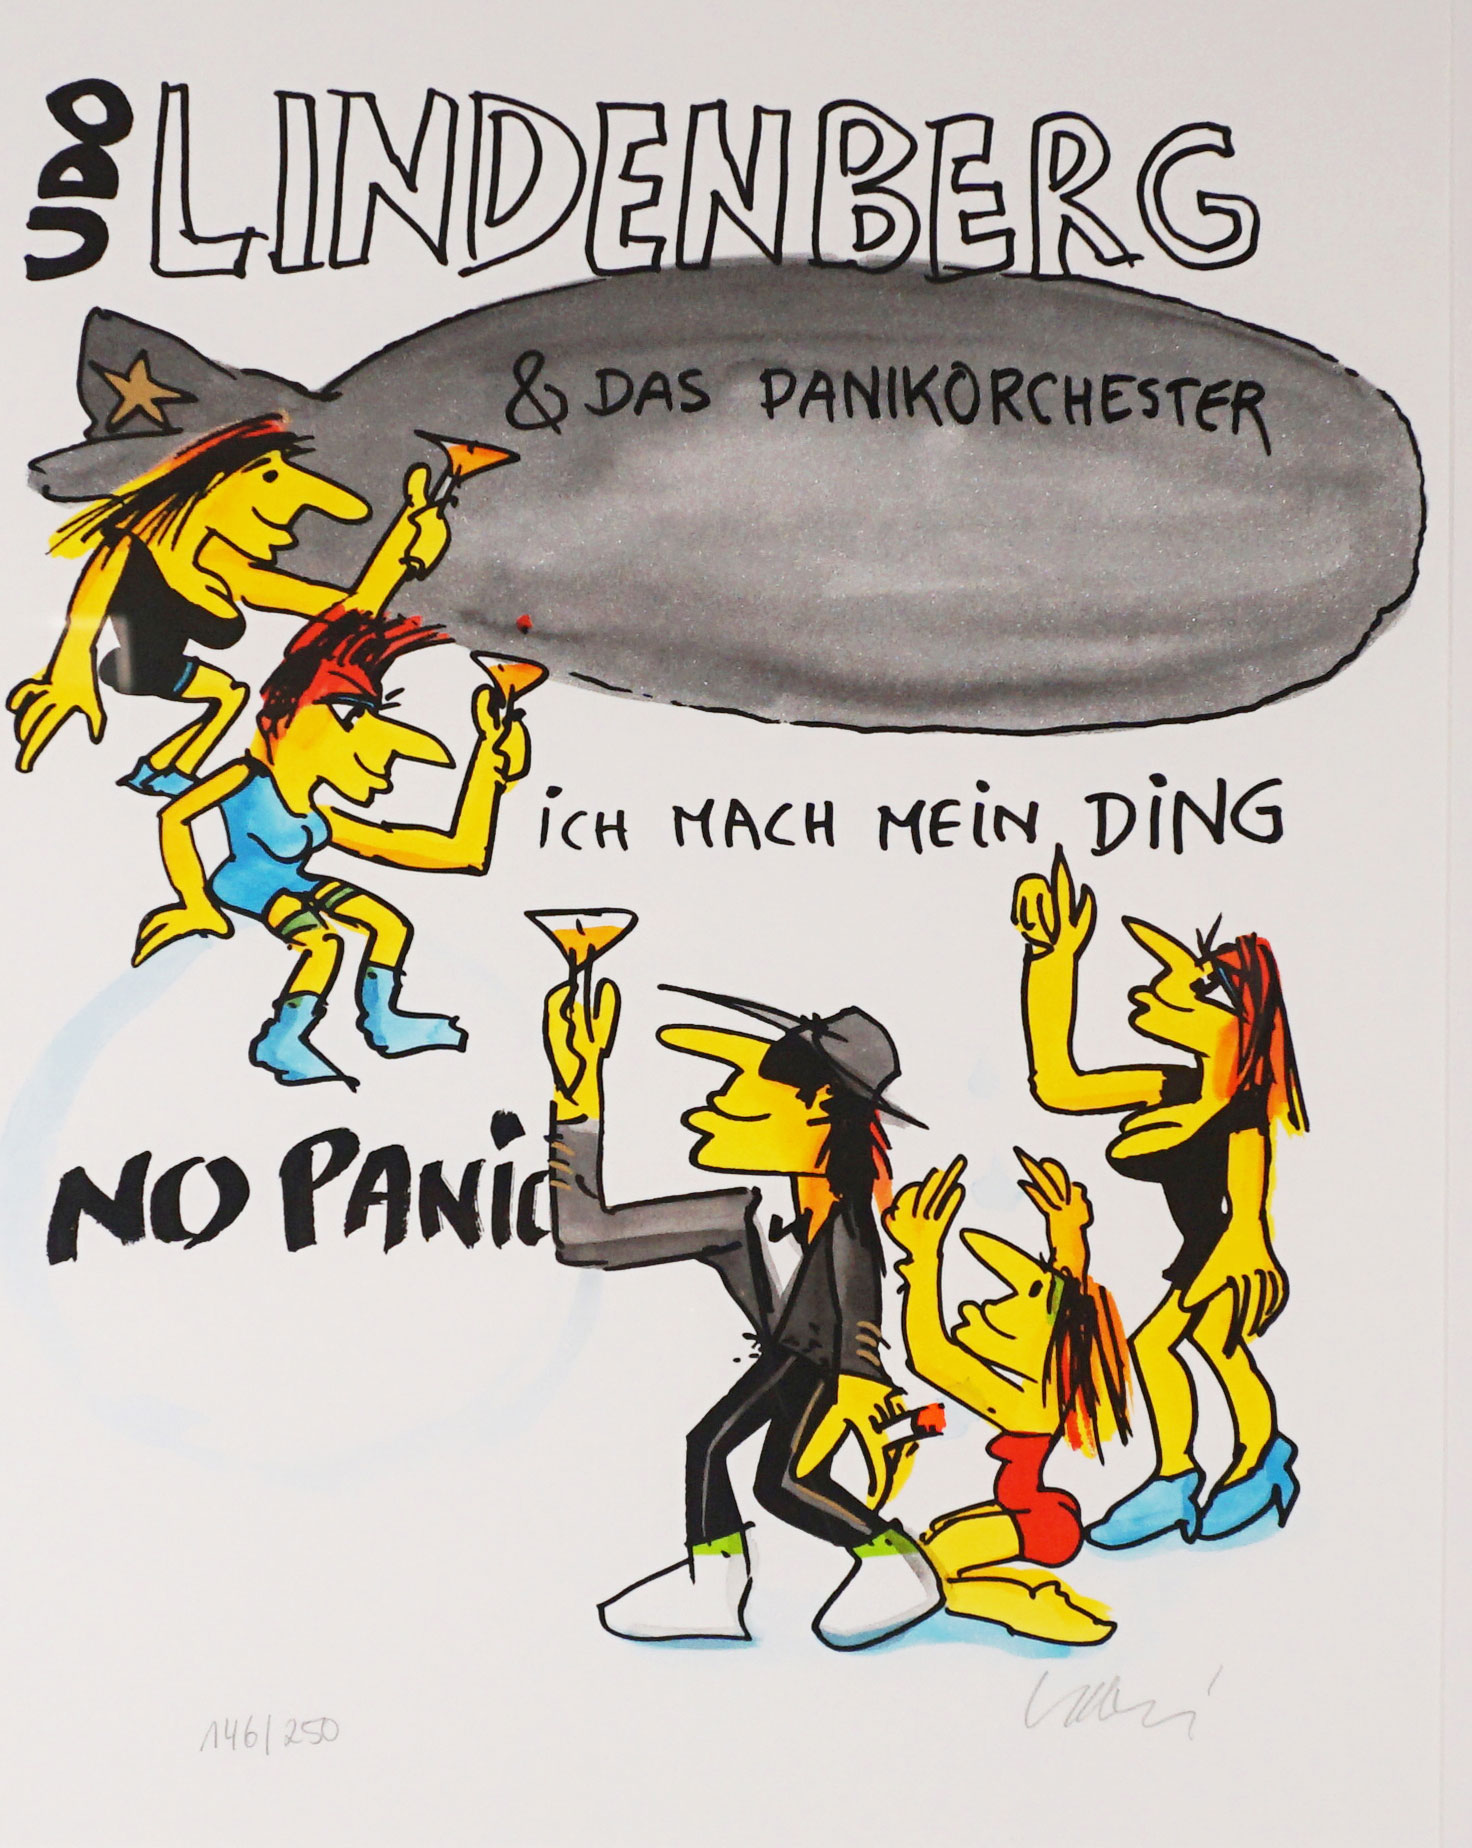 Udo Lindenberg "Panikorchester - Ich mach mein Ding"